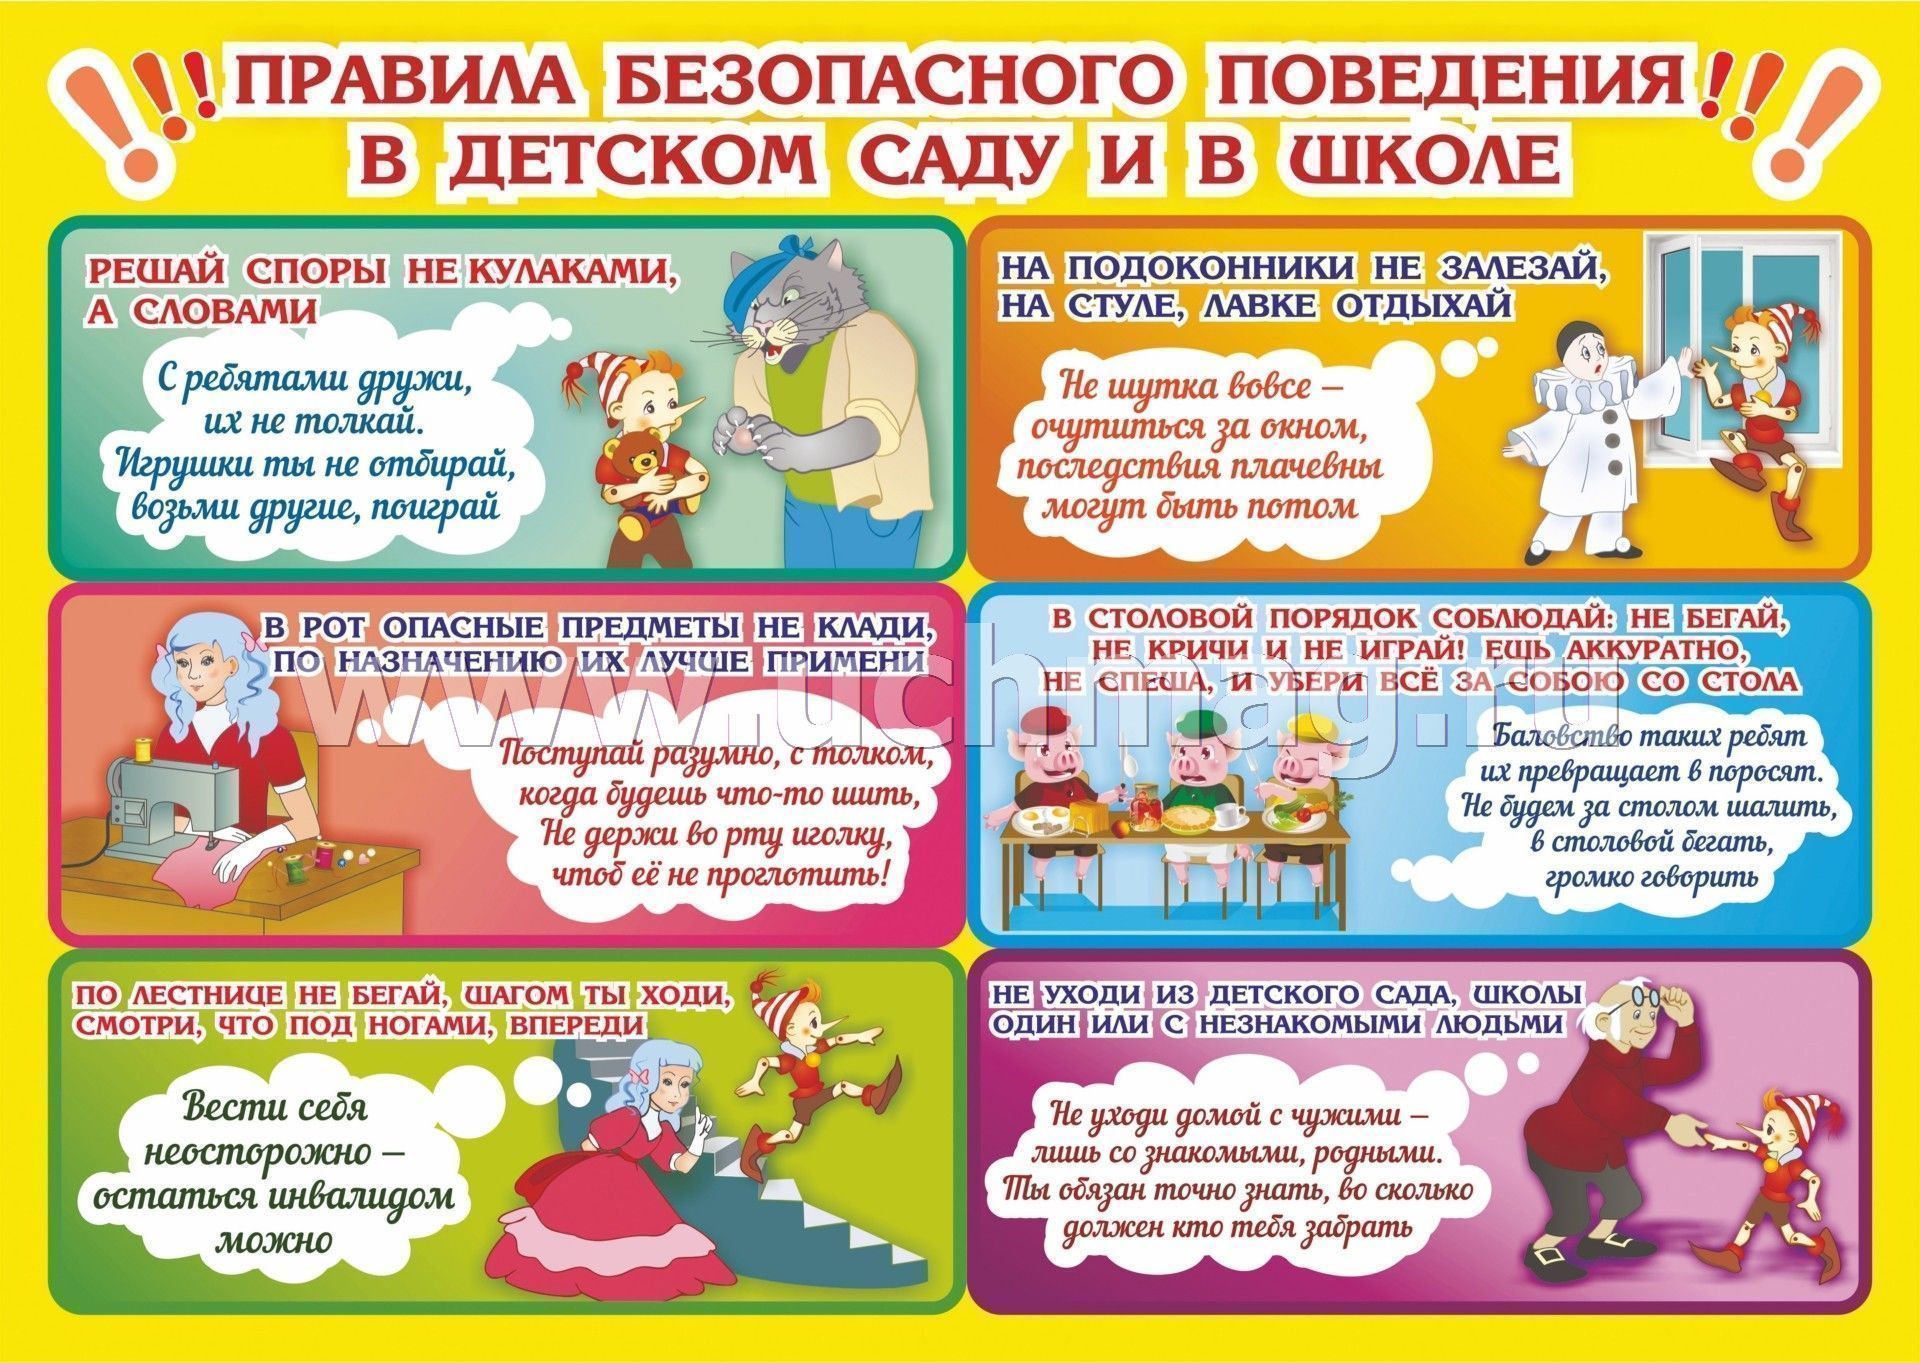 Плакат поведение в школе. Правила поведения для детей. Правила безопасности для детей в детском саду. Плакат правила поведения в школе. Безопасное поведение детей в детском саду.